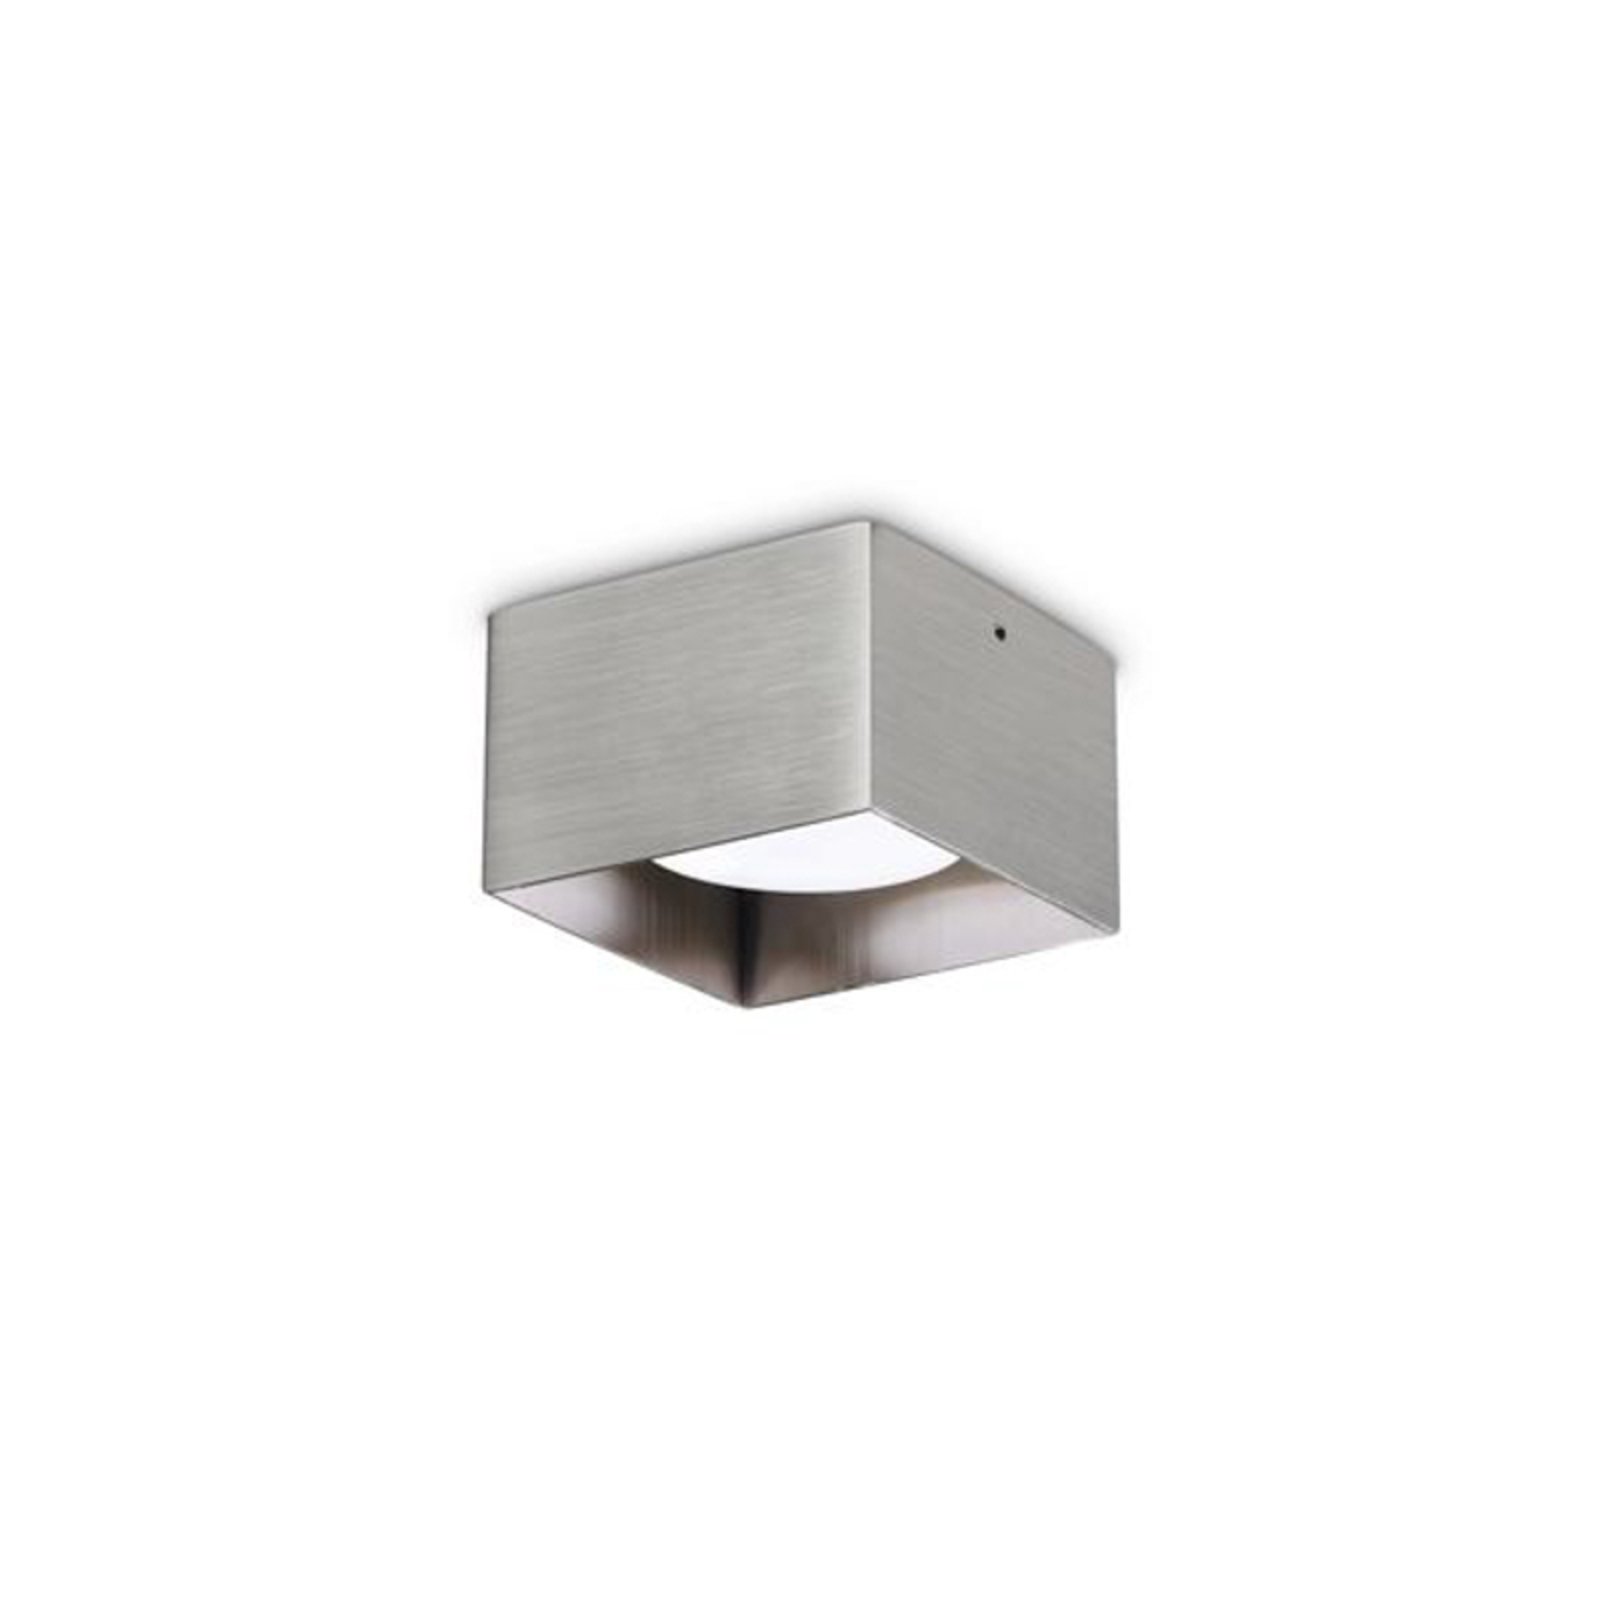 Ideal Lux downlight Spike Square, nickel-coloured, aluminium, 10x10cm